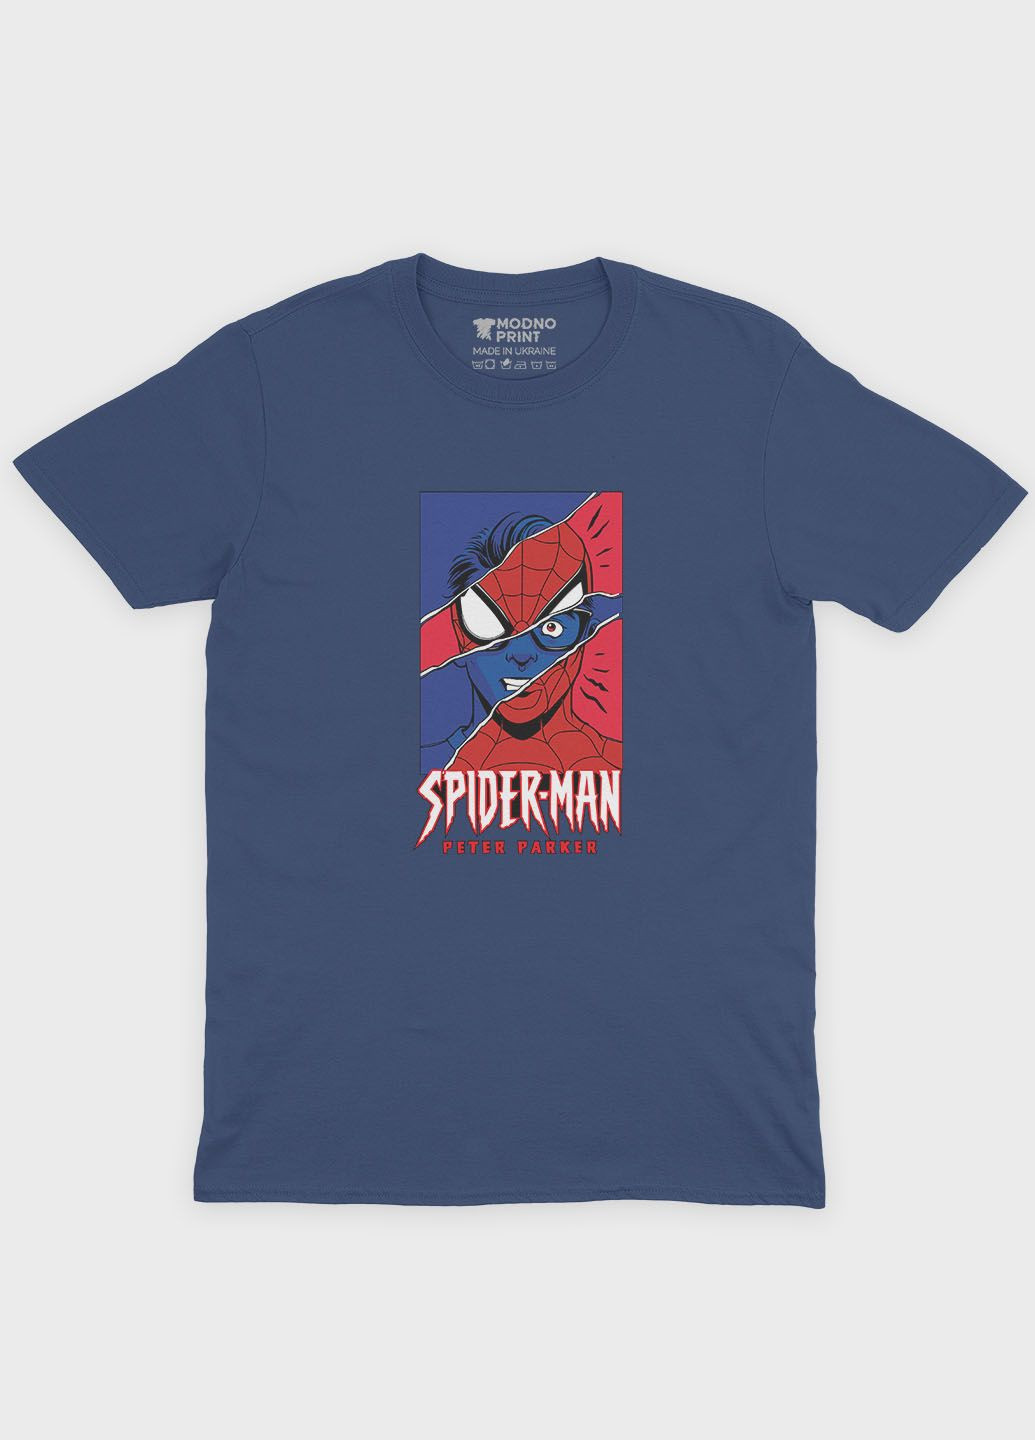 Темно-синяя летняя мужская футболка с принтом супергероя - человек-паук (ts001-1-nav-006-014-032-f) Modno